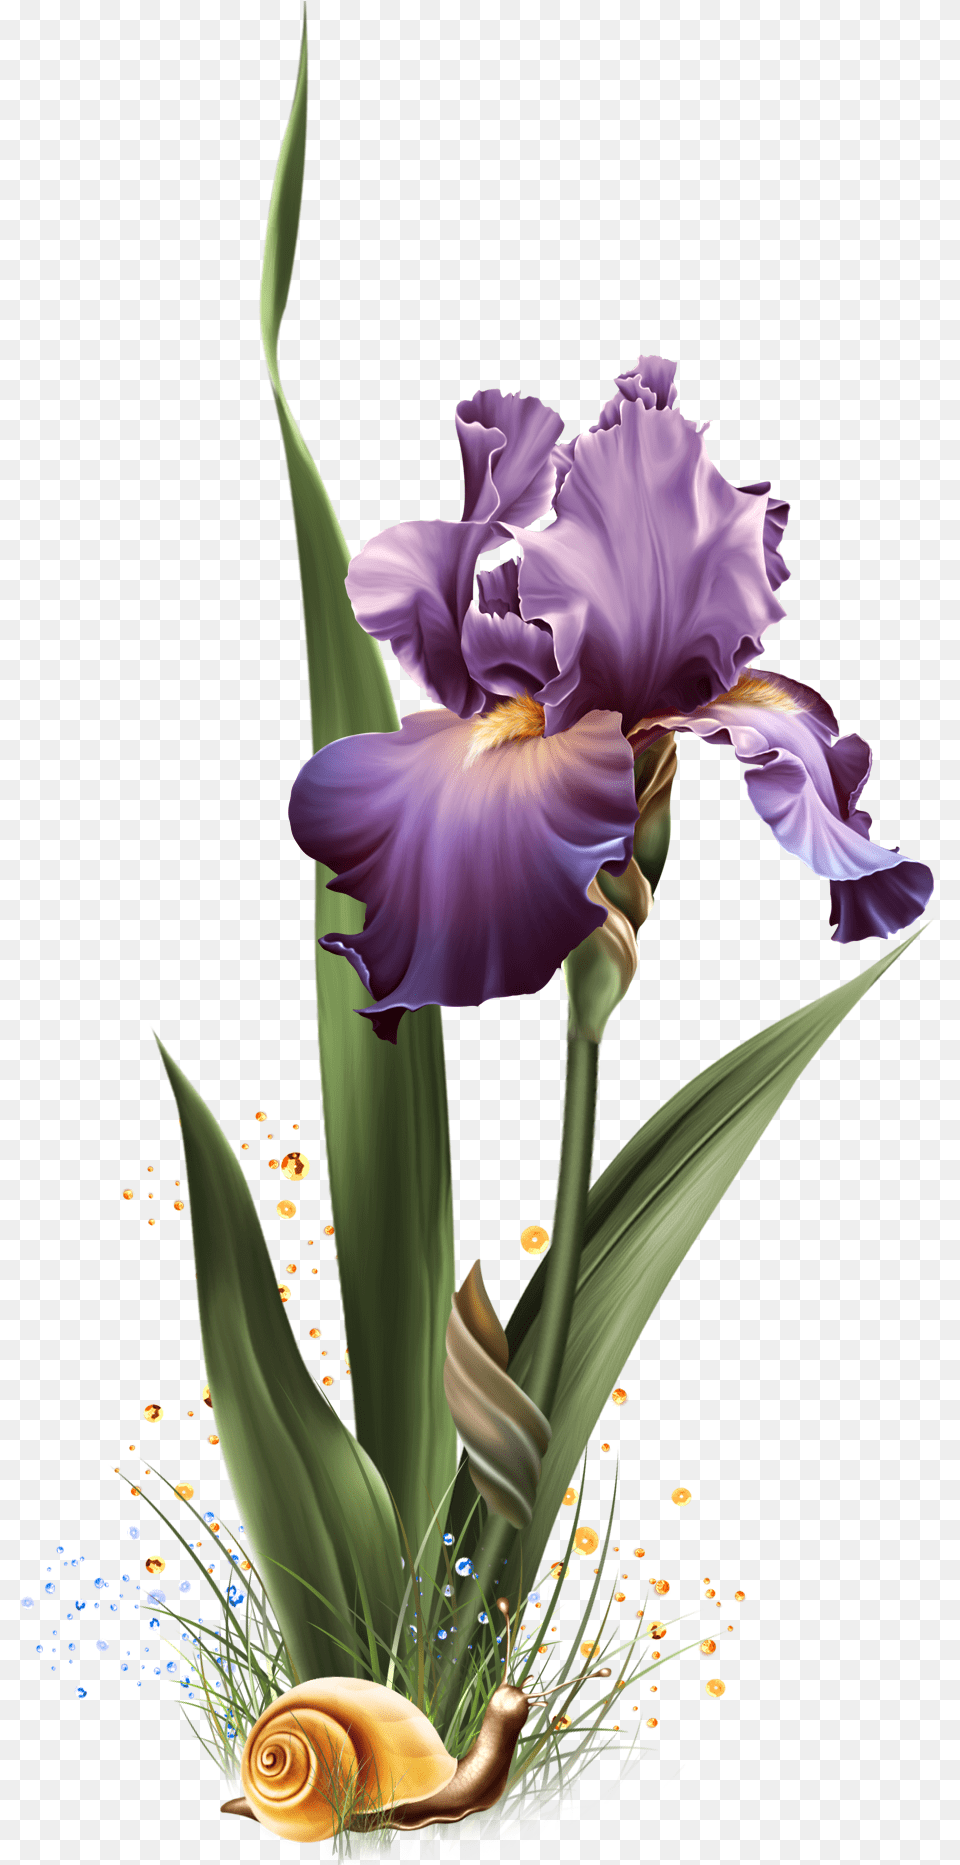 Iris Dreams Jaguarwoman, Flower, Plant, Petal, Flower Arrangement Png